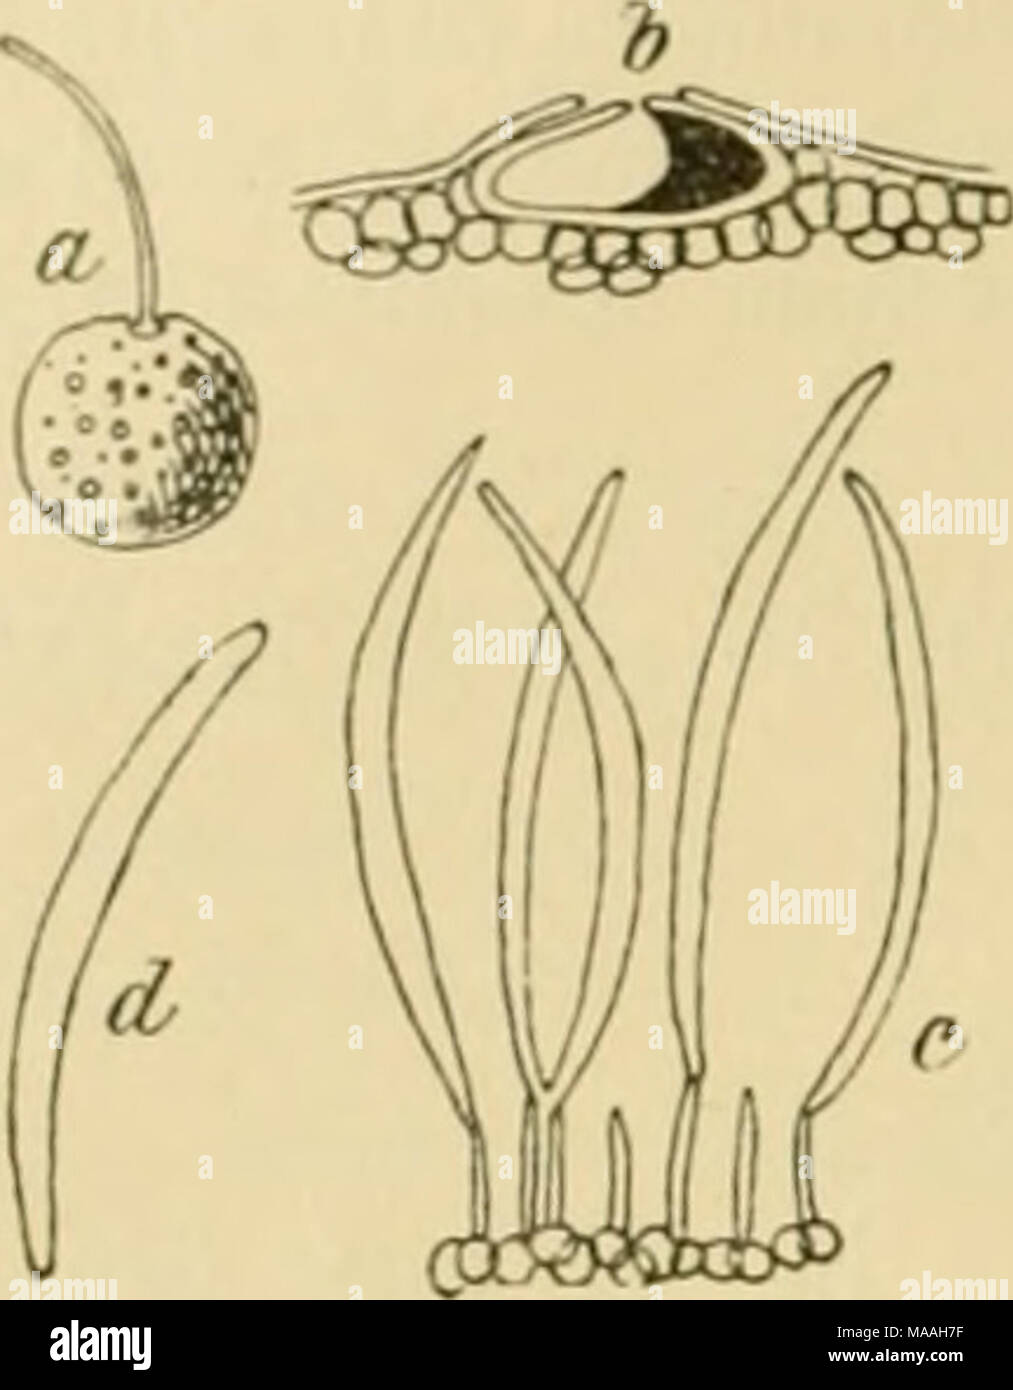 . Dr. L. Rabenhorst's Kryptogamen-Flora von Deutschland, Oesterreich und der Schweiz . An faulenden Beeren von Convallaria majalis in den Ardennen. Cotivolvuins {Calystegia) 2206. S. CoiiYolvuli Desm. in Ann. sc. nat. 1842, XML p. 108. Sacc, Syll. III. p. 536. Syn. Septoria fuscella Berk. in Curr., Simpl, Sphaer. No. 396. Exs. P. Sydow, Mycoth. march. No. 4538. Flecken kreisförmig, dann zusammenfliessend und unregelmässig, roth oder braun-russfarbig, endlich im Centrum weisslich; Frucht- gehäuse eingewachsen, klein, auf der Blattoberseite, bräunlich, am Scheitel durchbohrt; Sporen nadeiförmig, Stock Photo